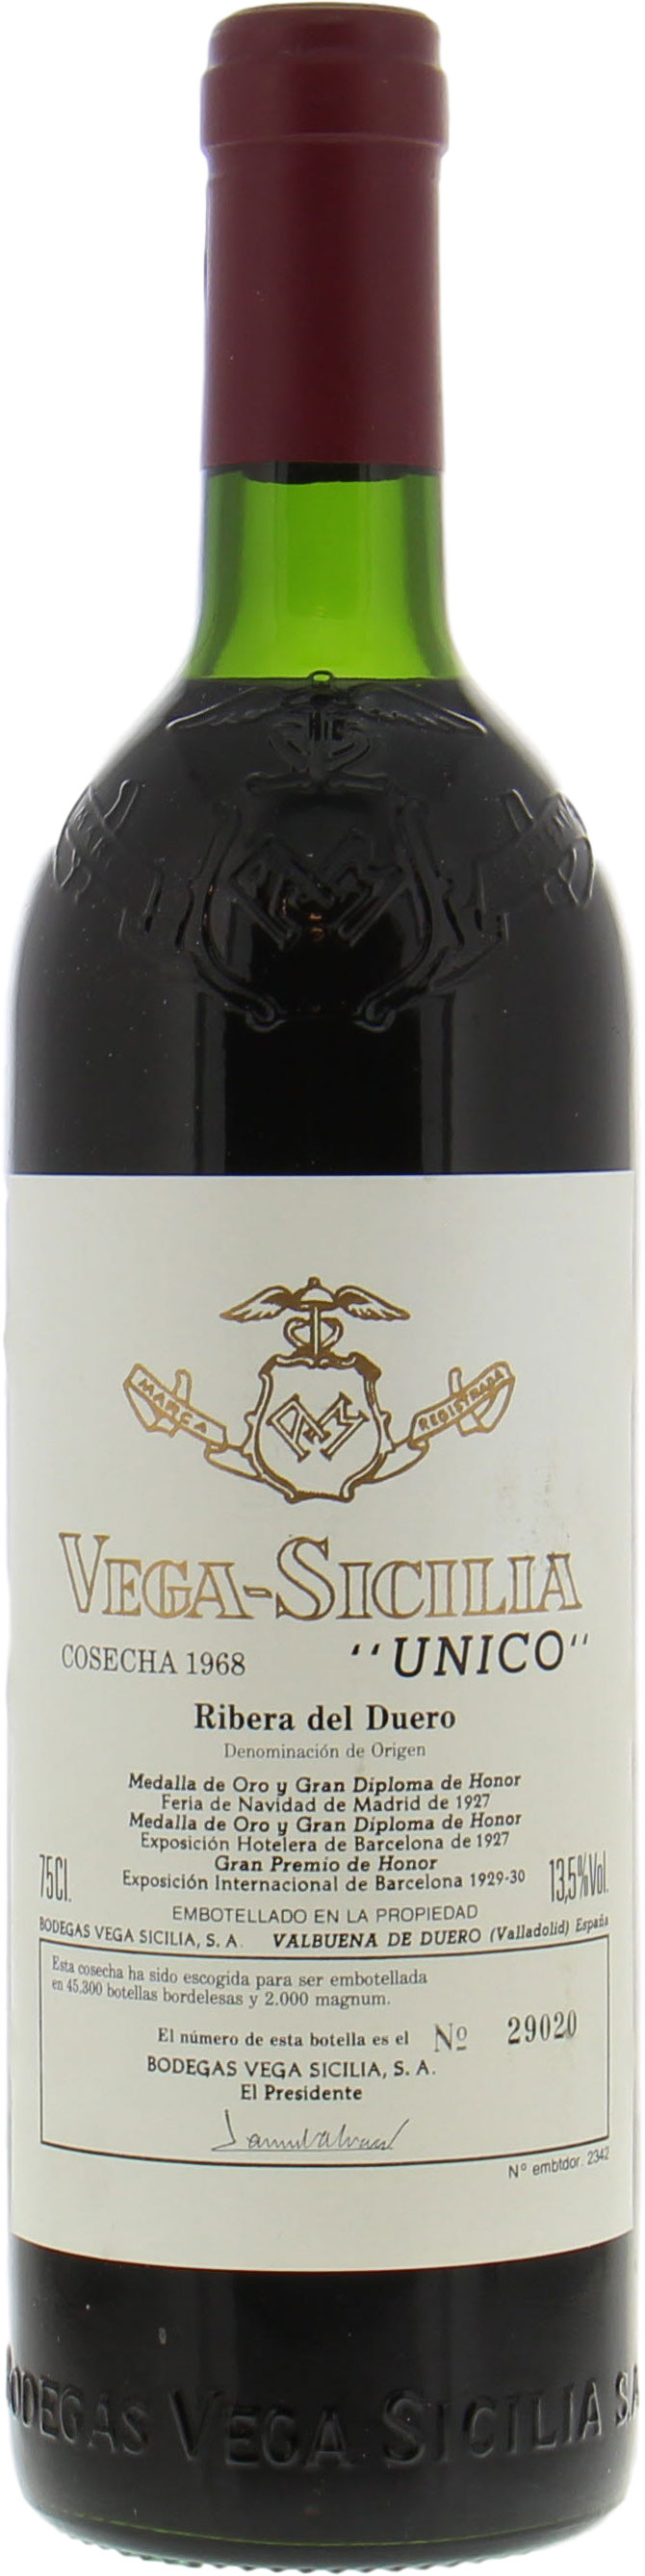 Vega Sicilia - Unico 1968